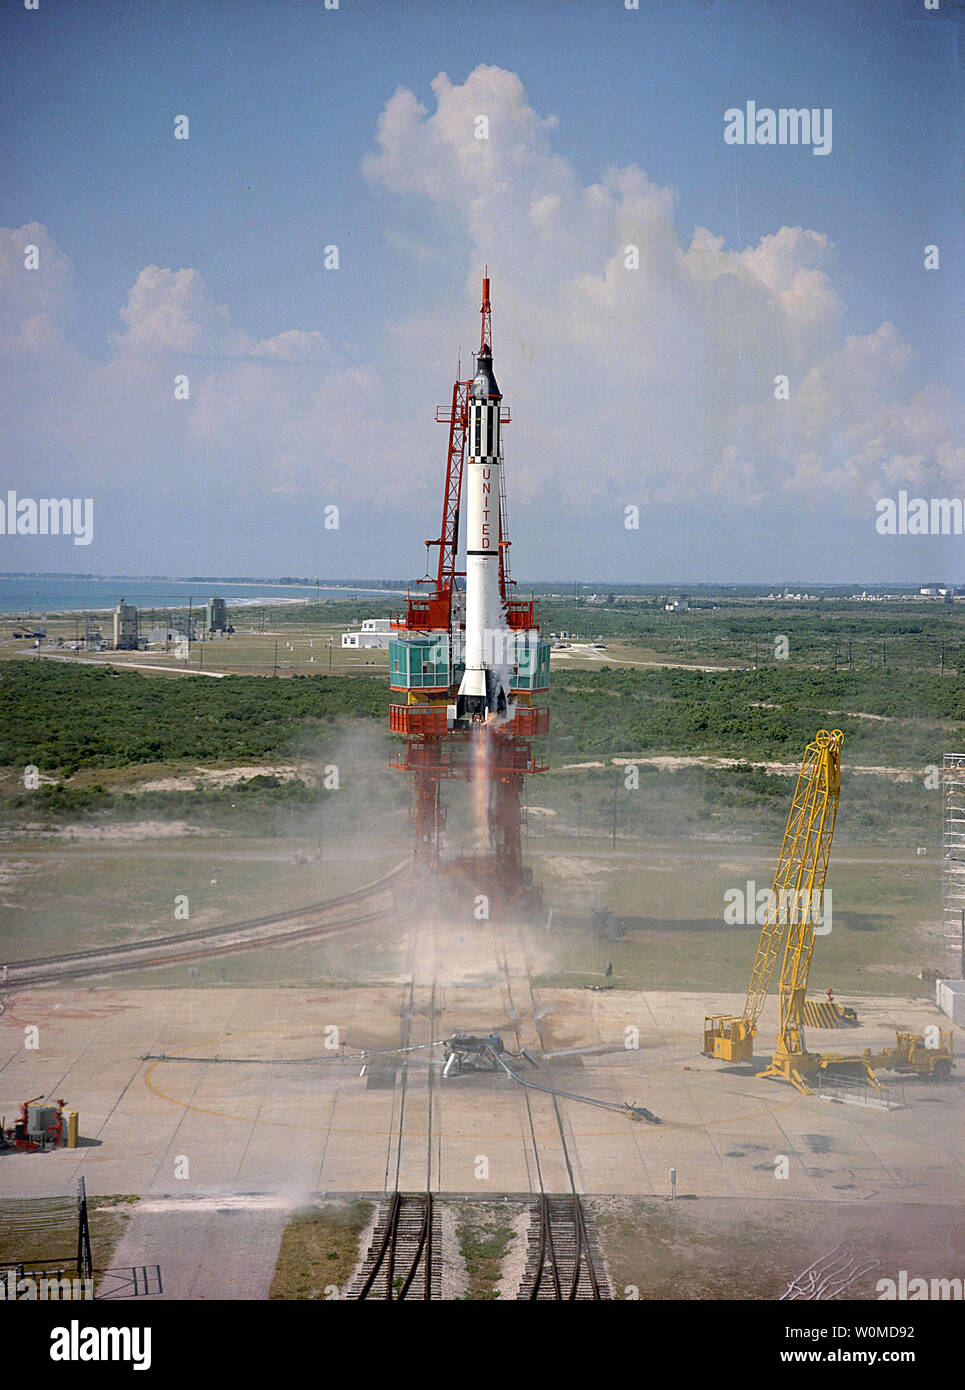 Astronauten Alan Shepard ist in den Weltraum auf einem mercury-redstone Rakete am 5. Mai 1961 geschleudert. Freiheit 7 war der erste amerikanische bemannten suborbitalen Raumflug, Shepard, der erste Amerikaner im Raum. Er später die Apollo 14 Mission geboten hatte, und war die fünfte Person auf dem Mond zu spazieren. (UPI Foto/NASA/Datei) Stockfoto